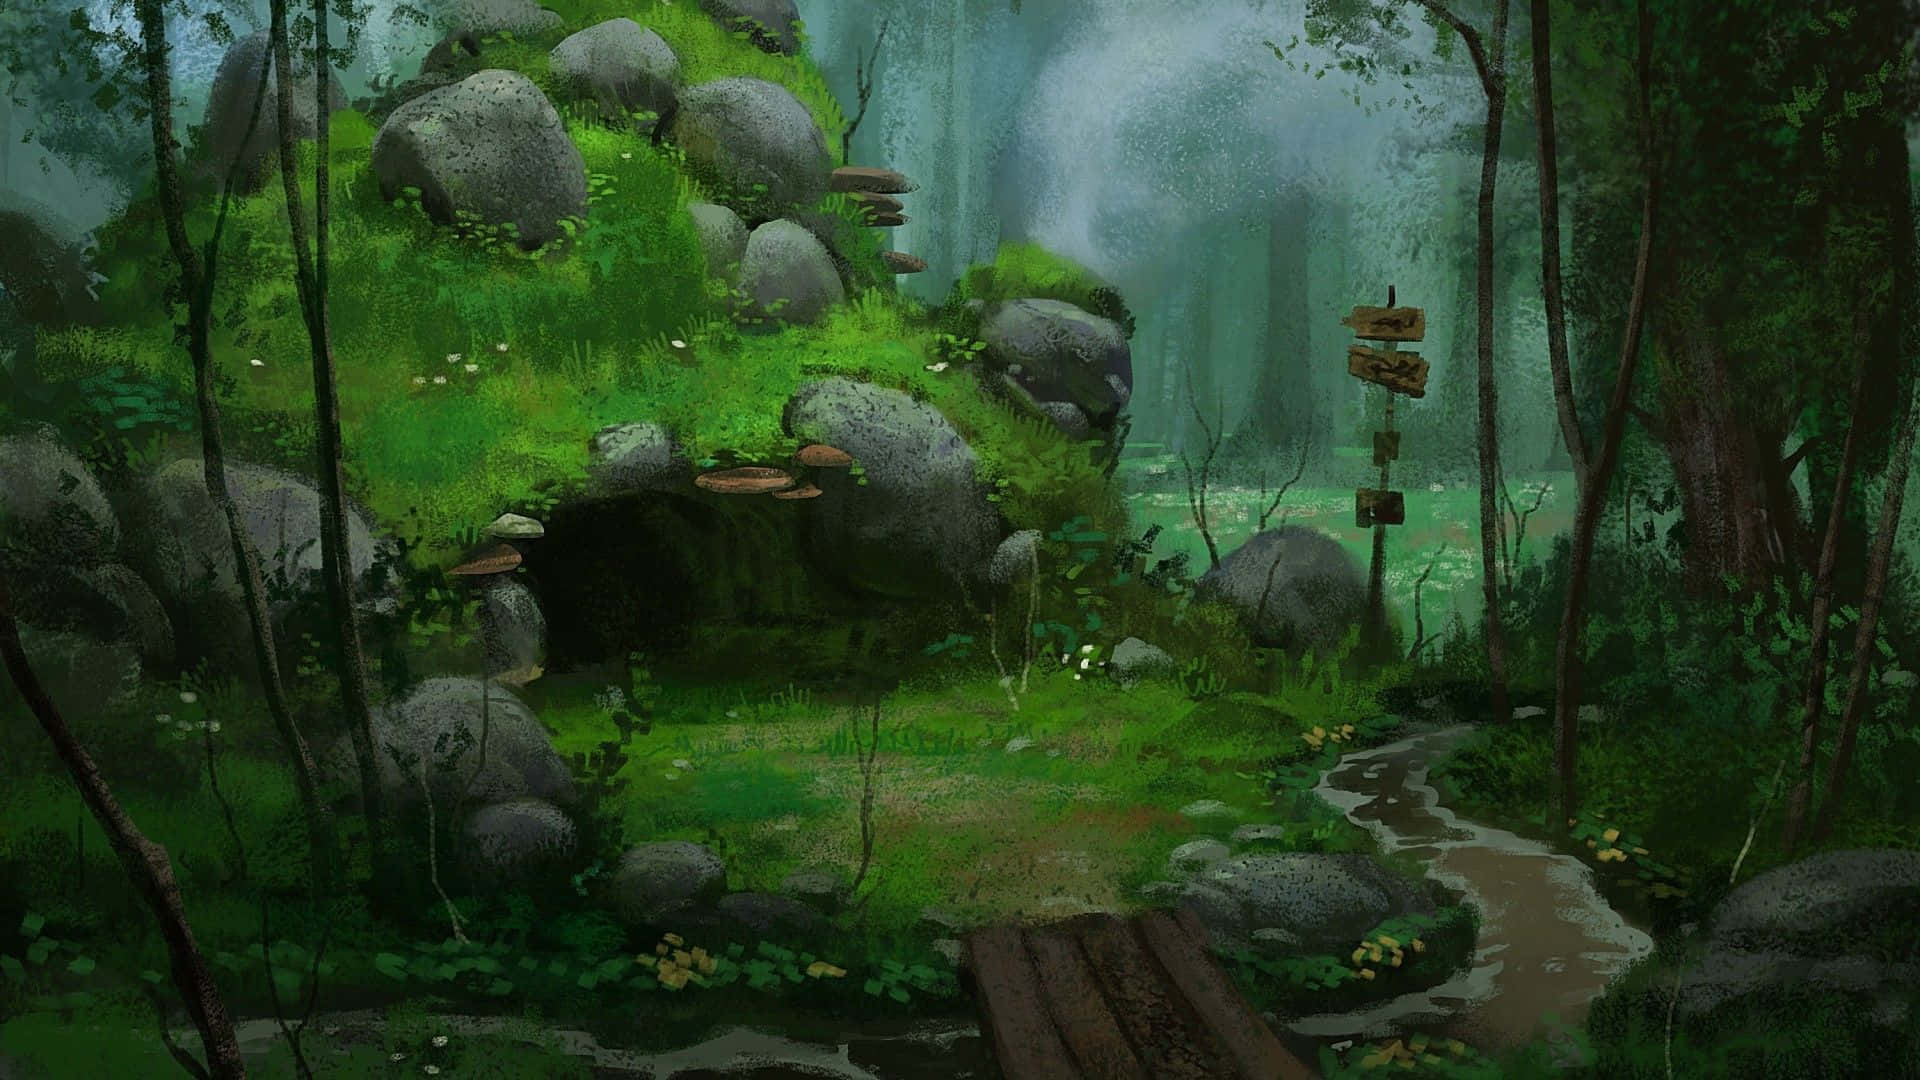 Sumérgeteen La Belleza De Este Bosque Inspirado En El Anime. Fondo de pantalla